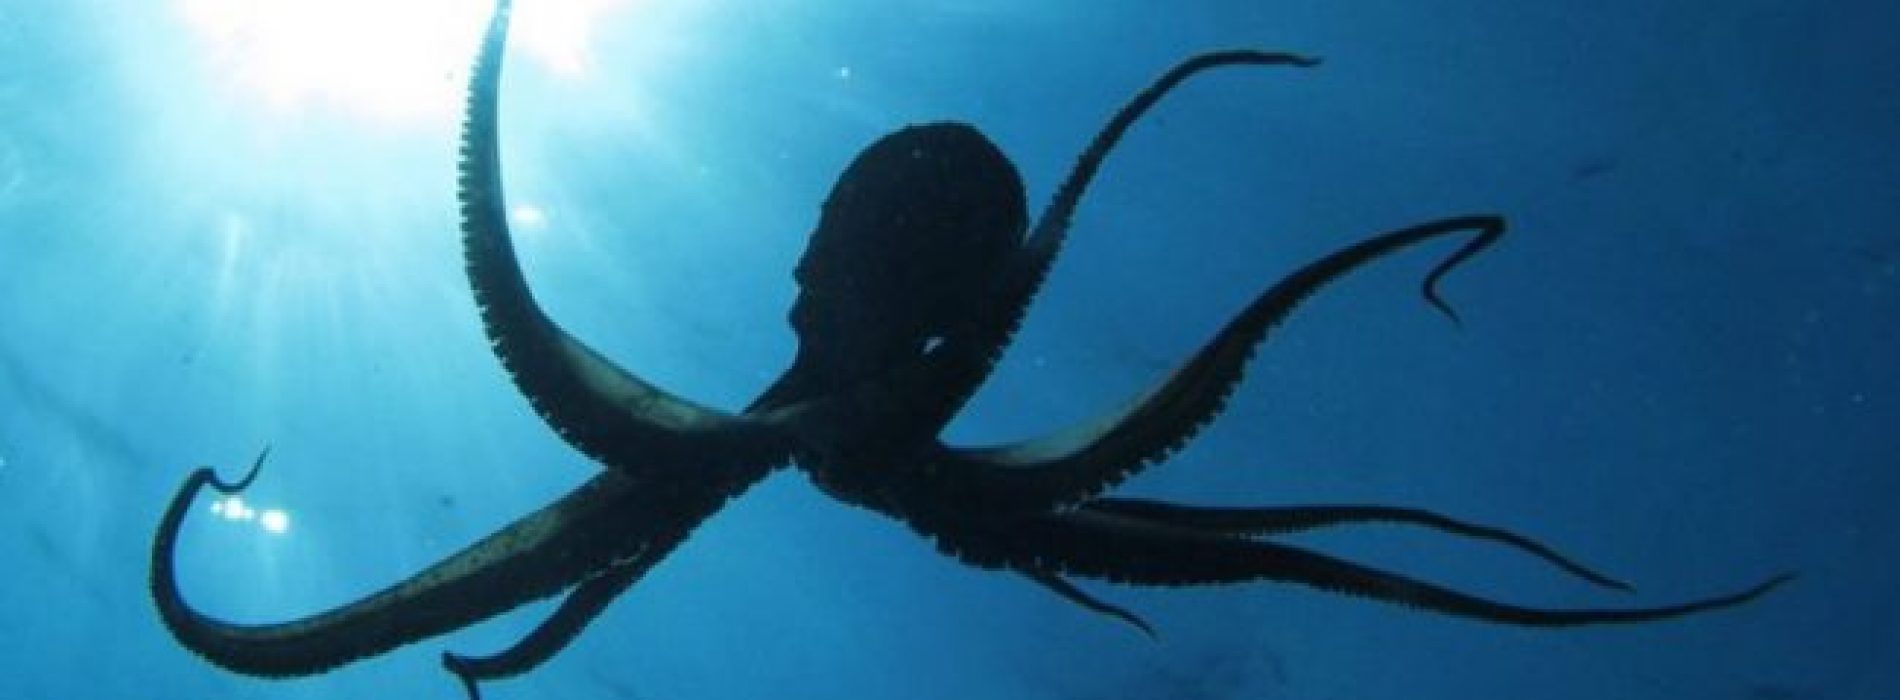 Wetenschappers waarschuwen dat we absoluut geen octopussen mogen kweken